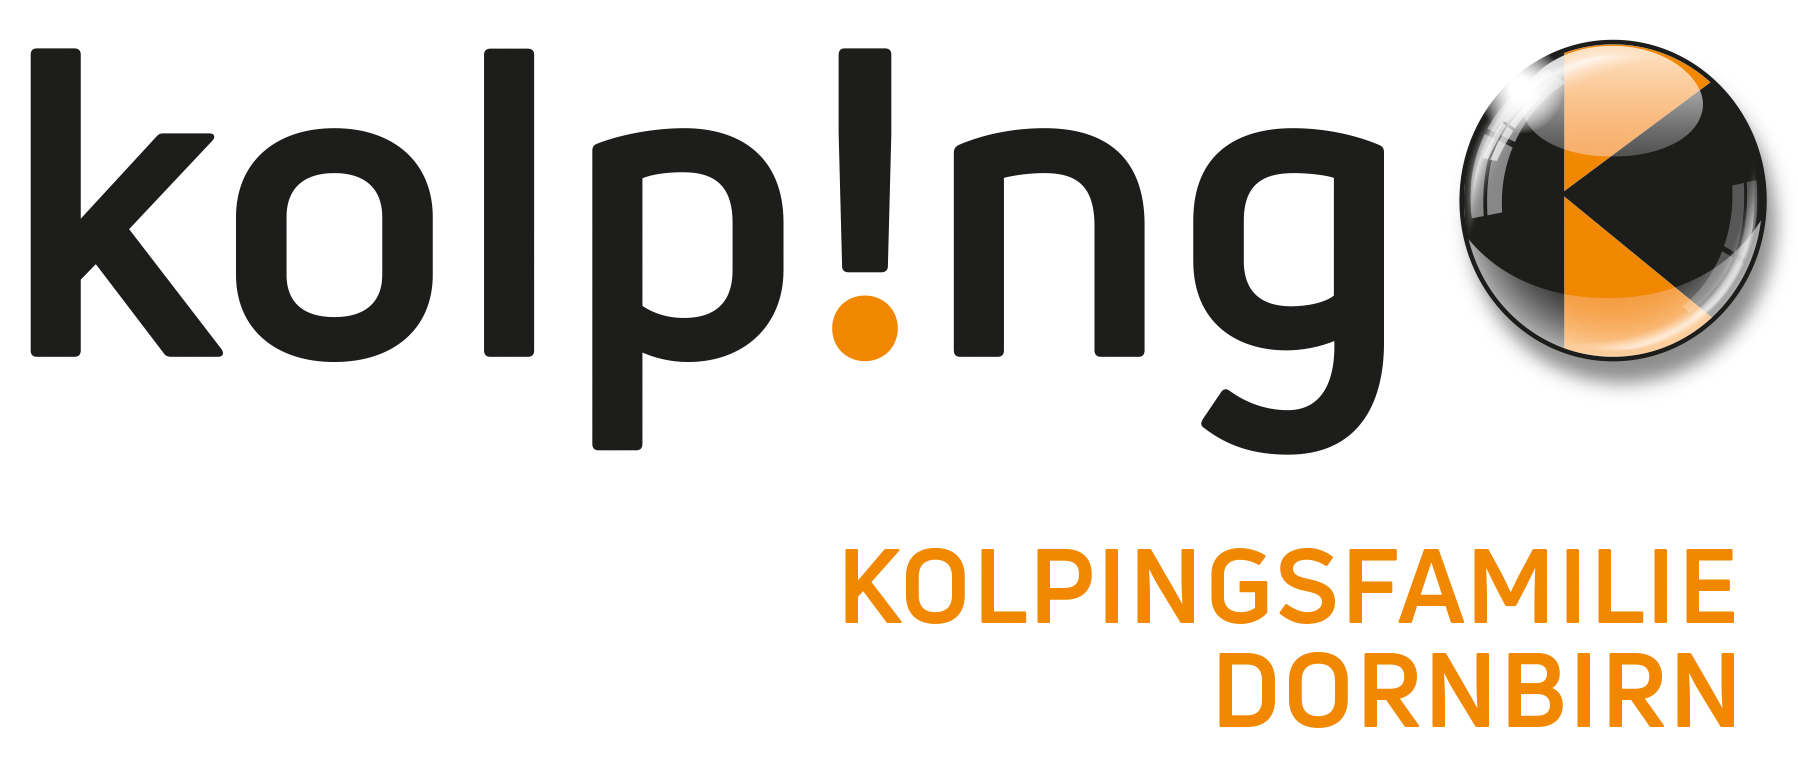 Kolpingsfamilie Dornbirn - Logo